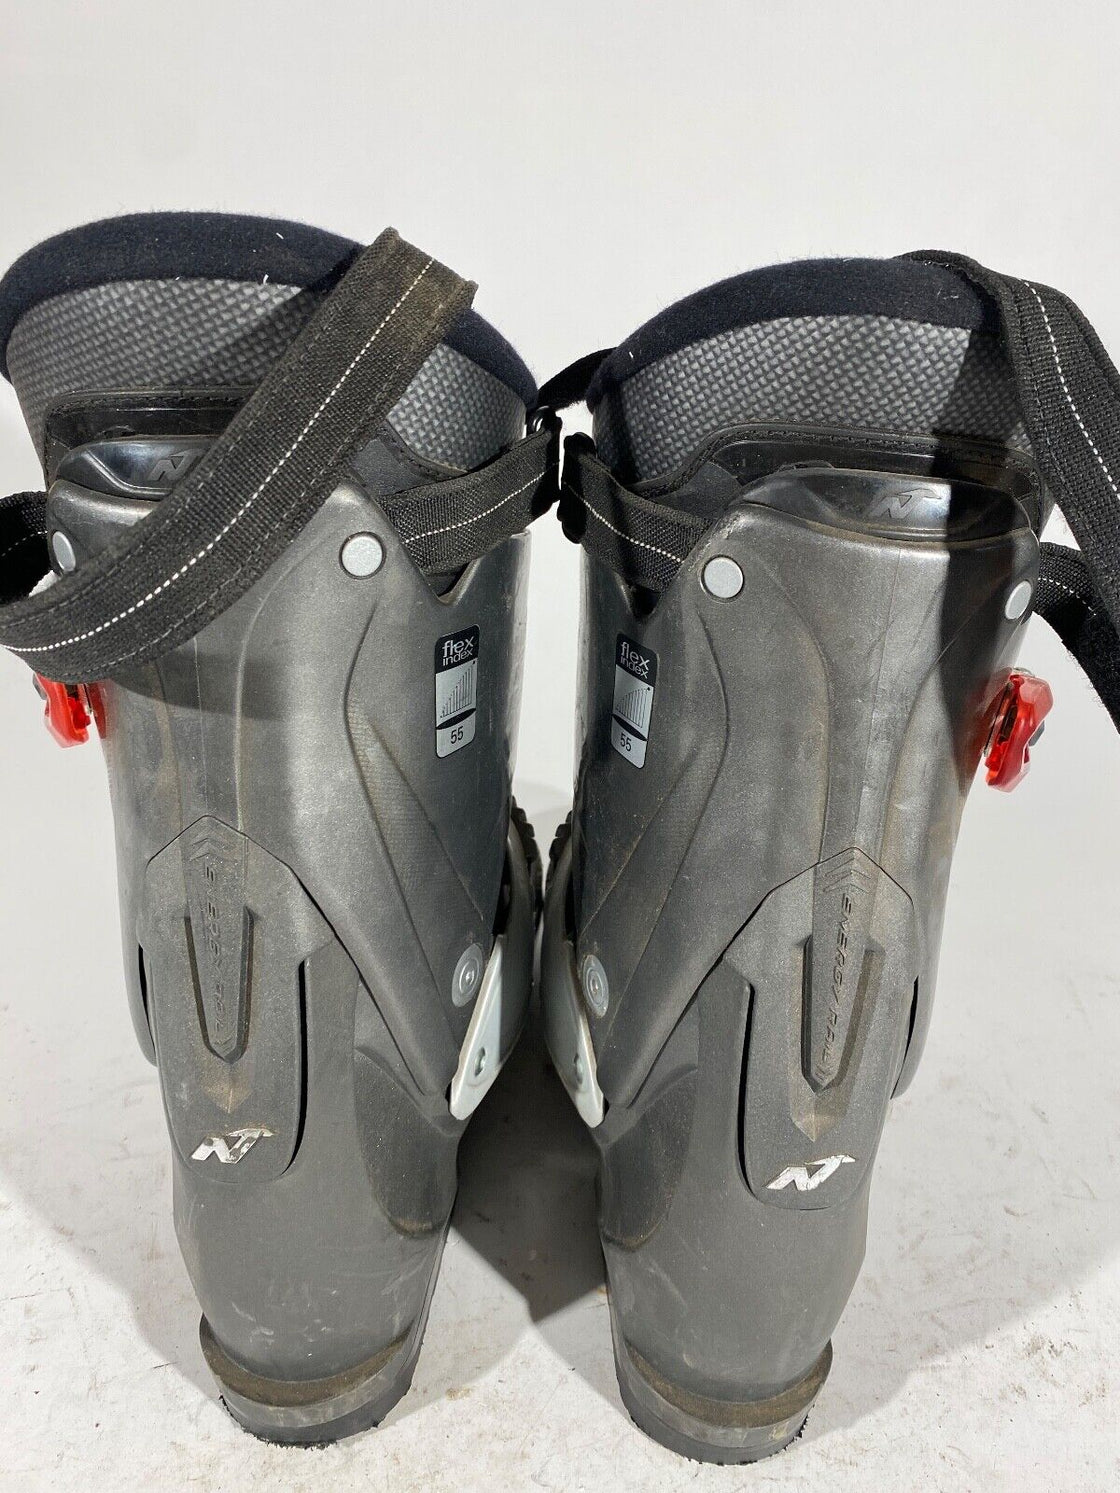 NORDICA Alpine Ski Boots Downhill Size Mondo 280 mm Outer Sole 325 mm